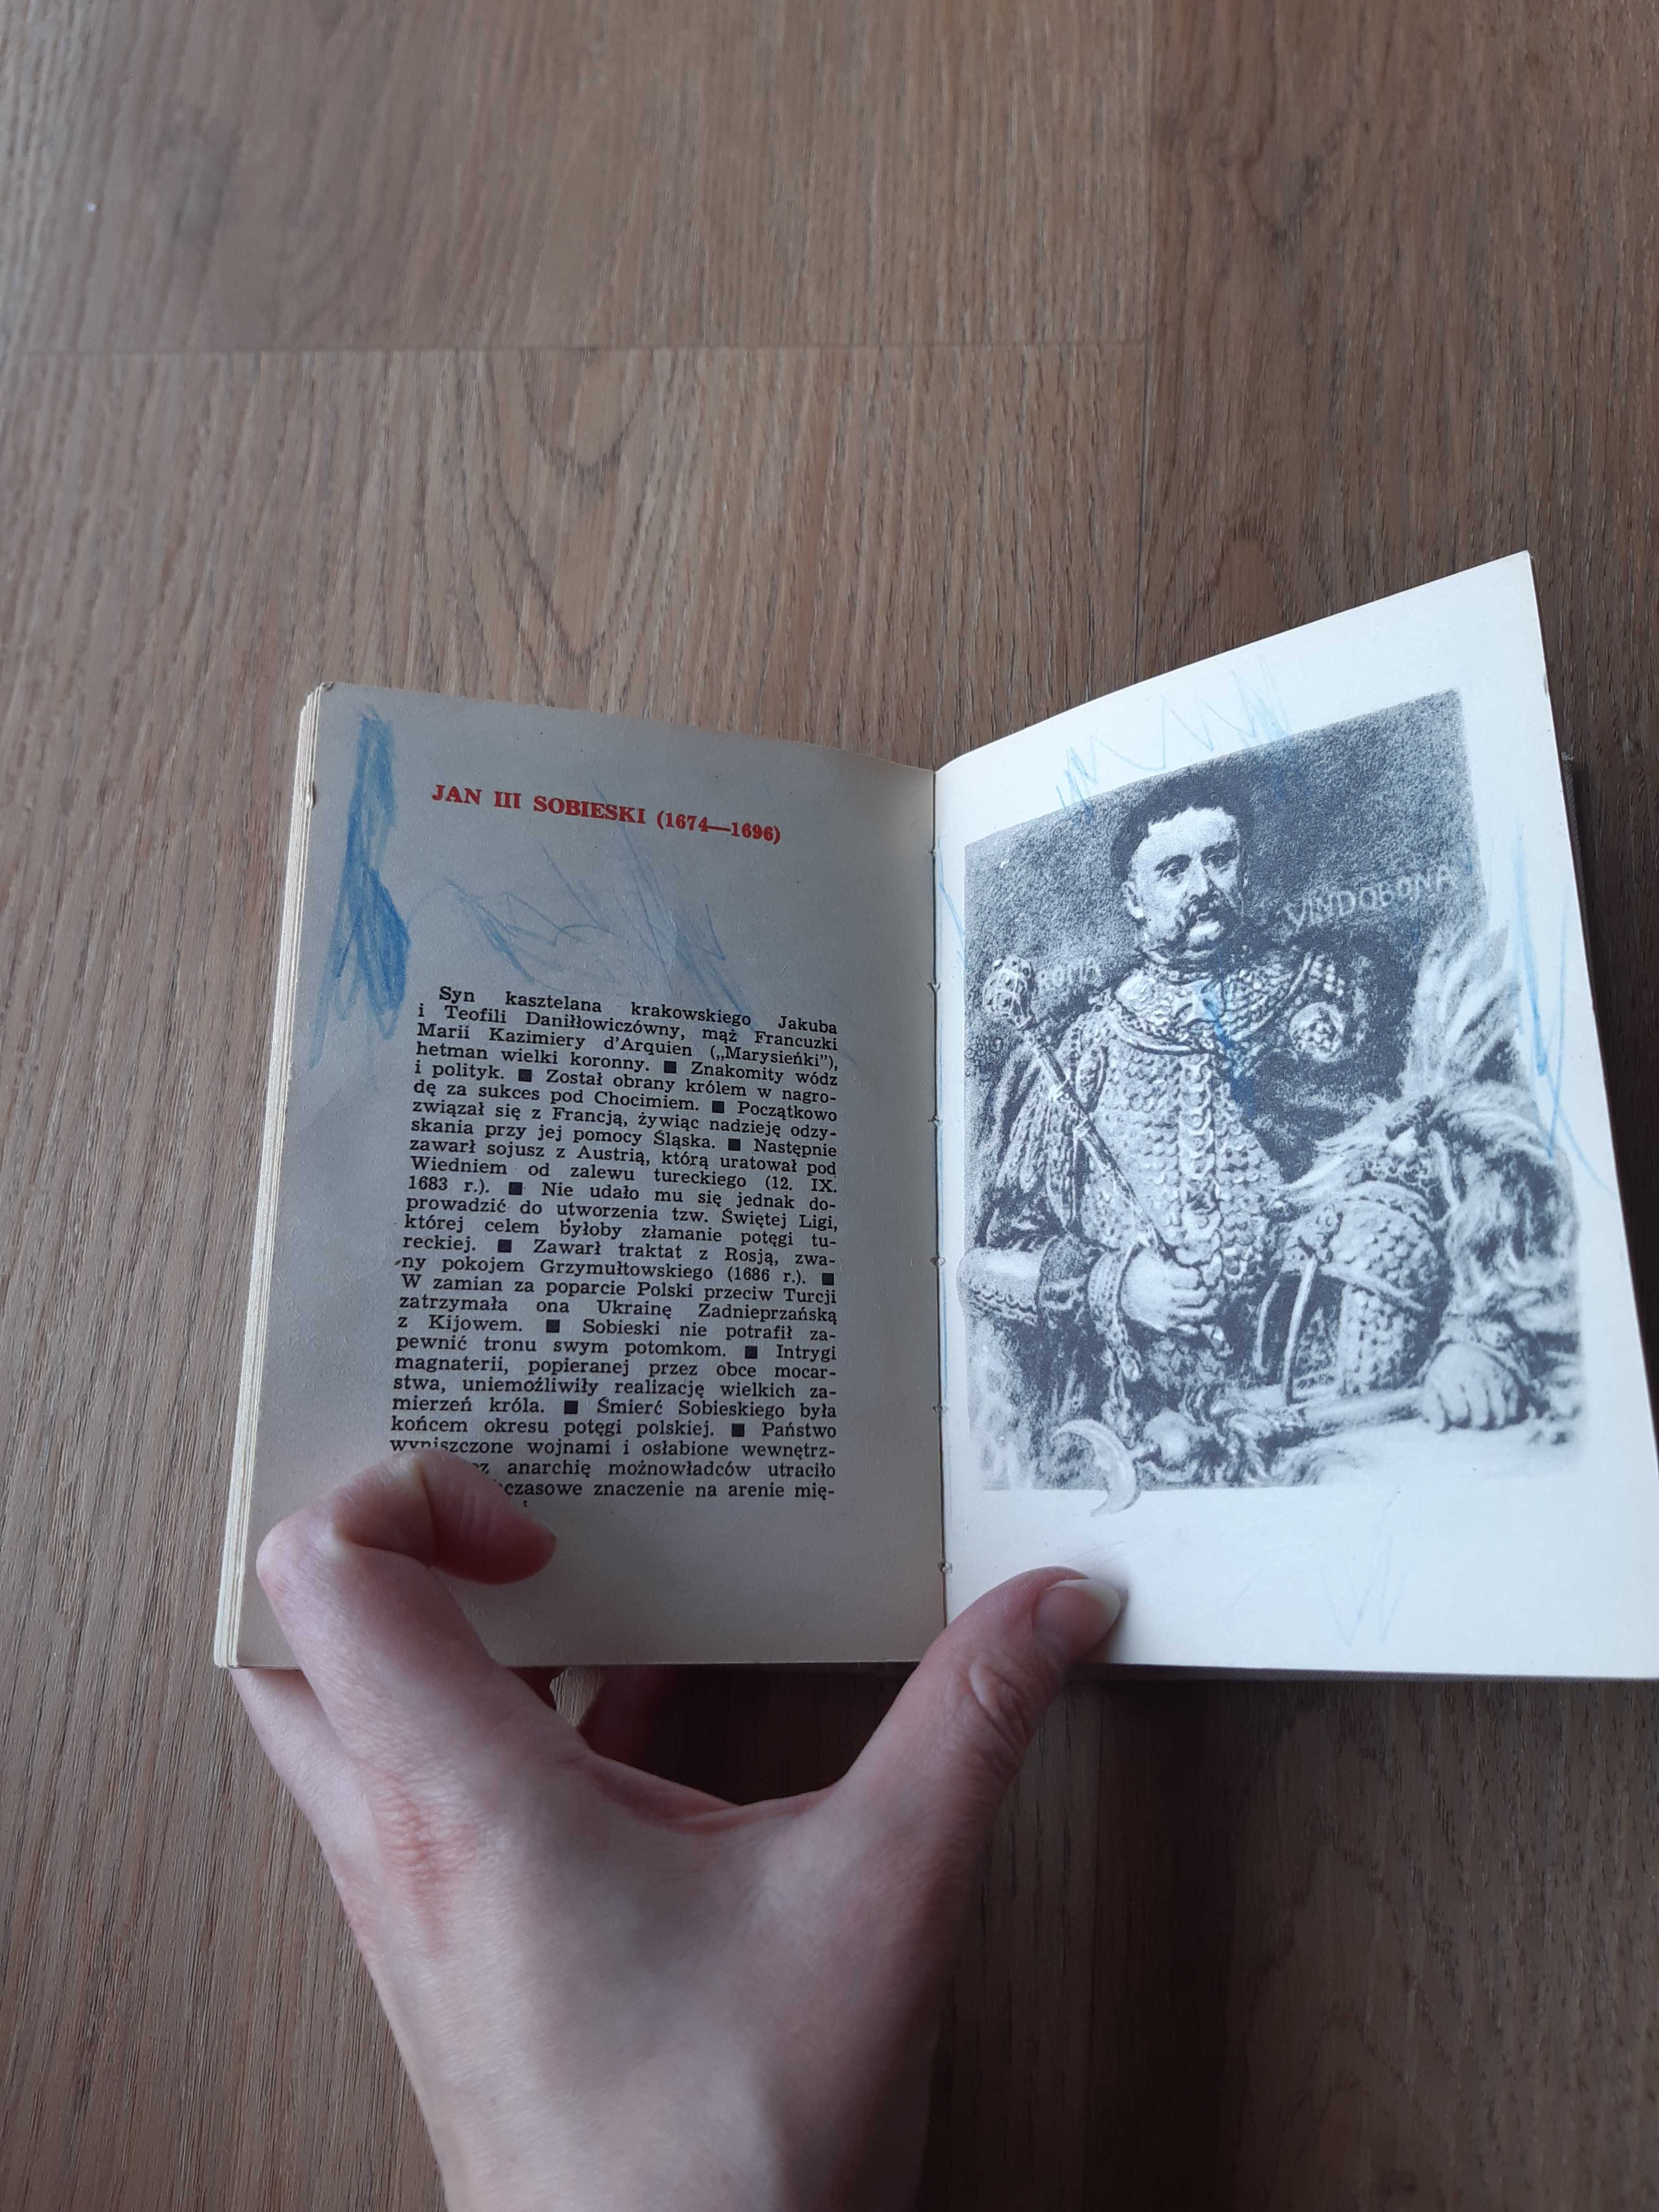 Poczet królów polskich - wg. Jana Matejki - stara ilustrowana książka